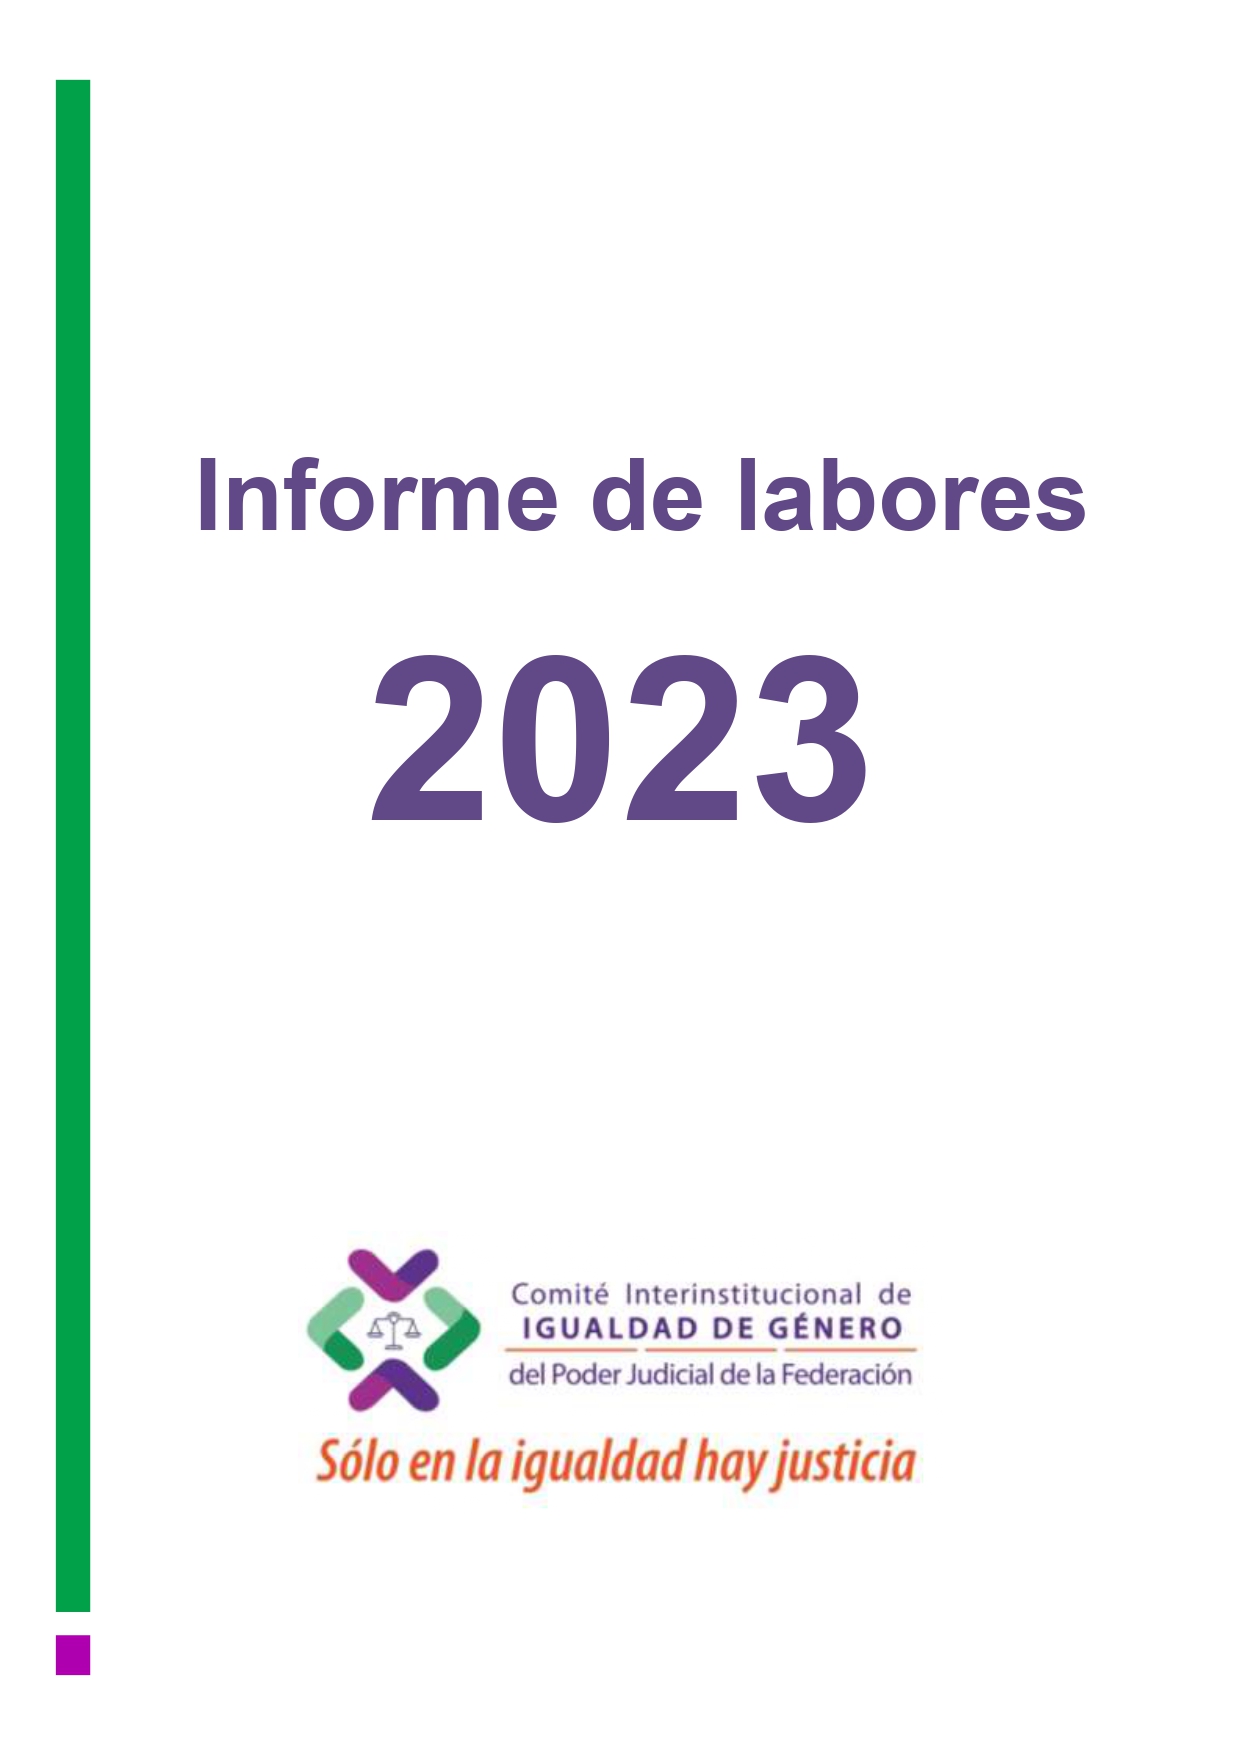 Comité Interinstitucional de Igualdad de Género del Poder Judicial de la Federación 2023